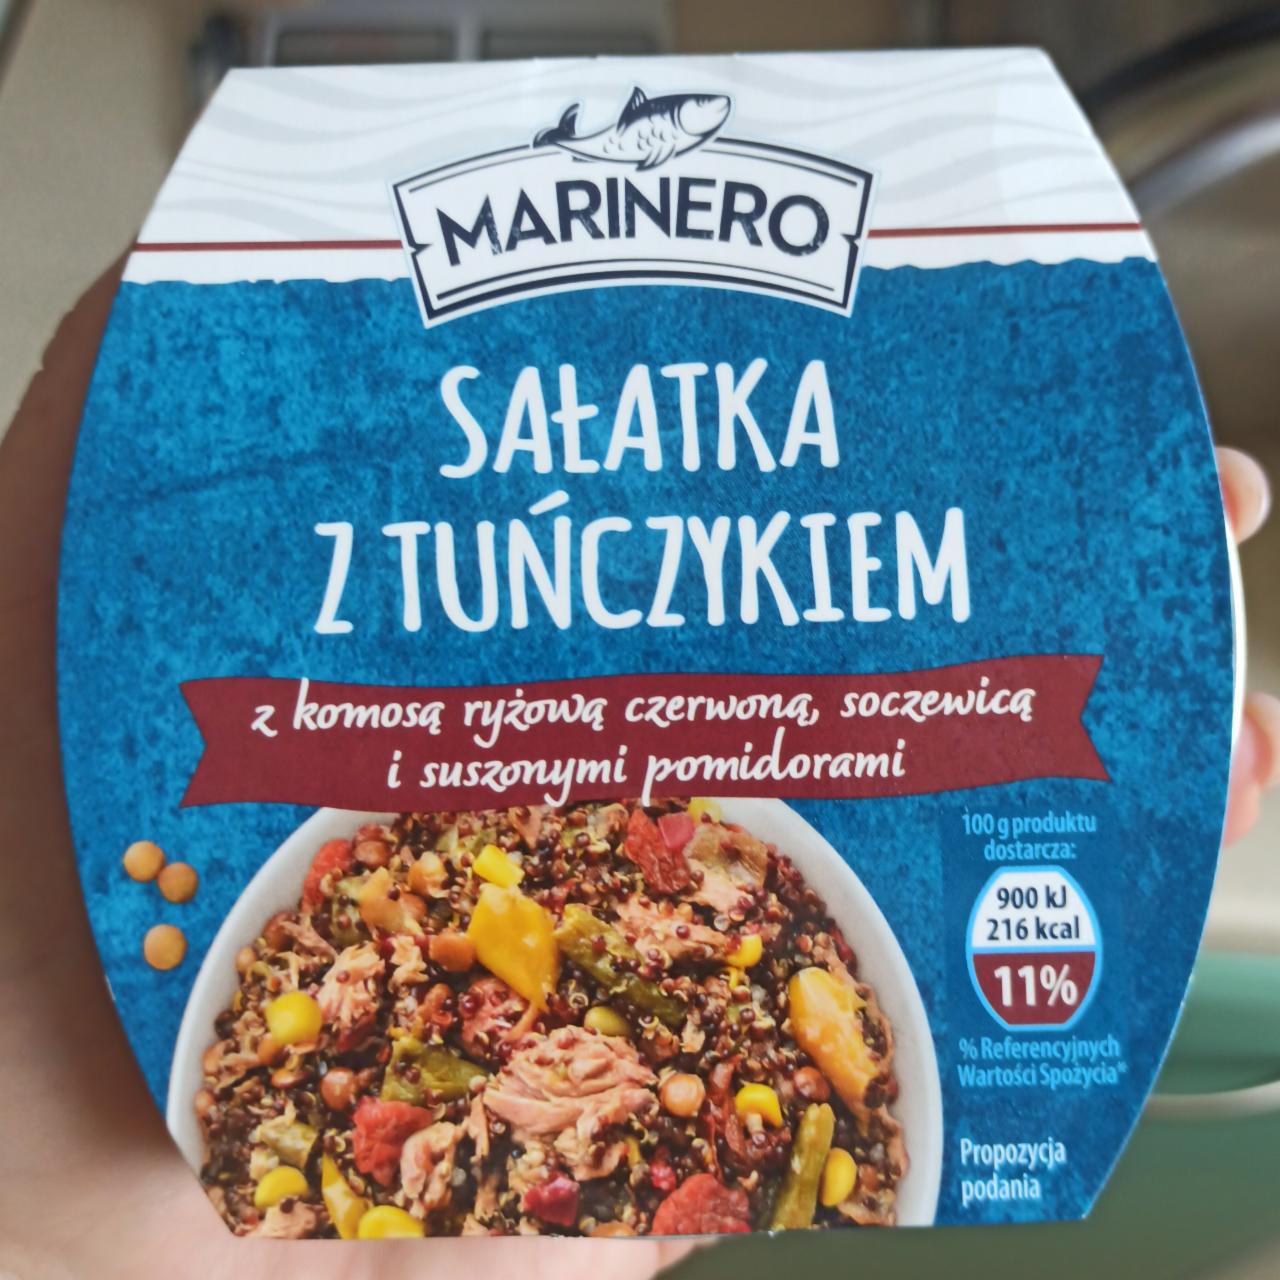 Fotografie - Salatka z tuńczykiem z komosa ryzowa czerwona, soczewica i suszonymi pomidorami Marinero